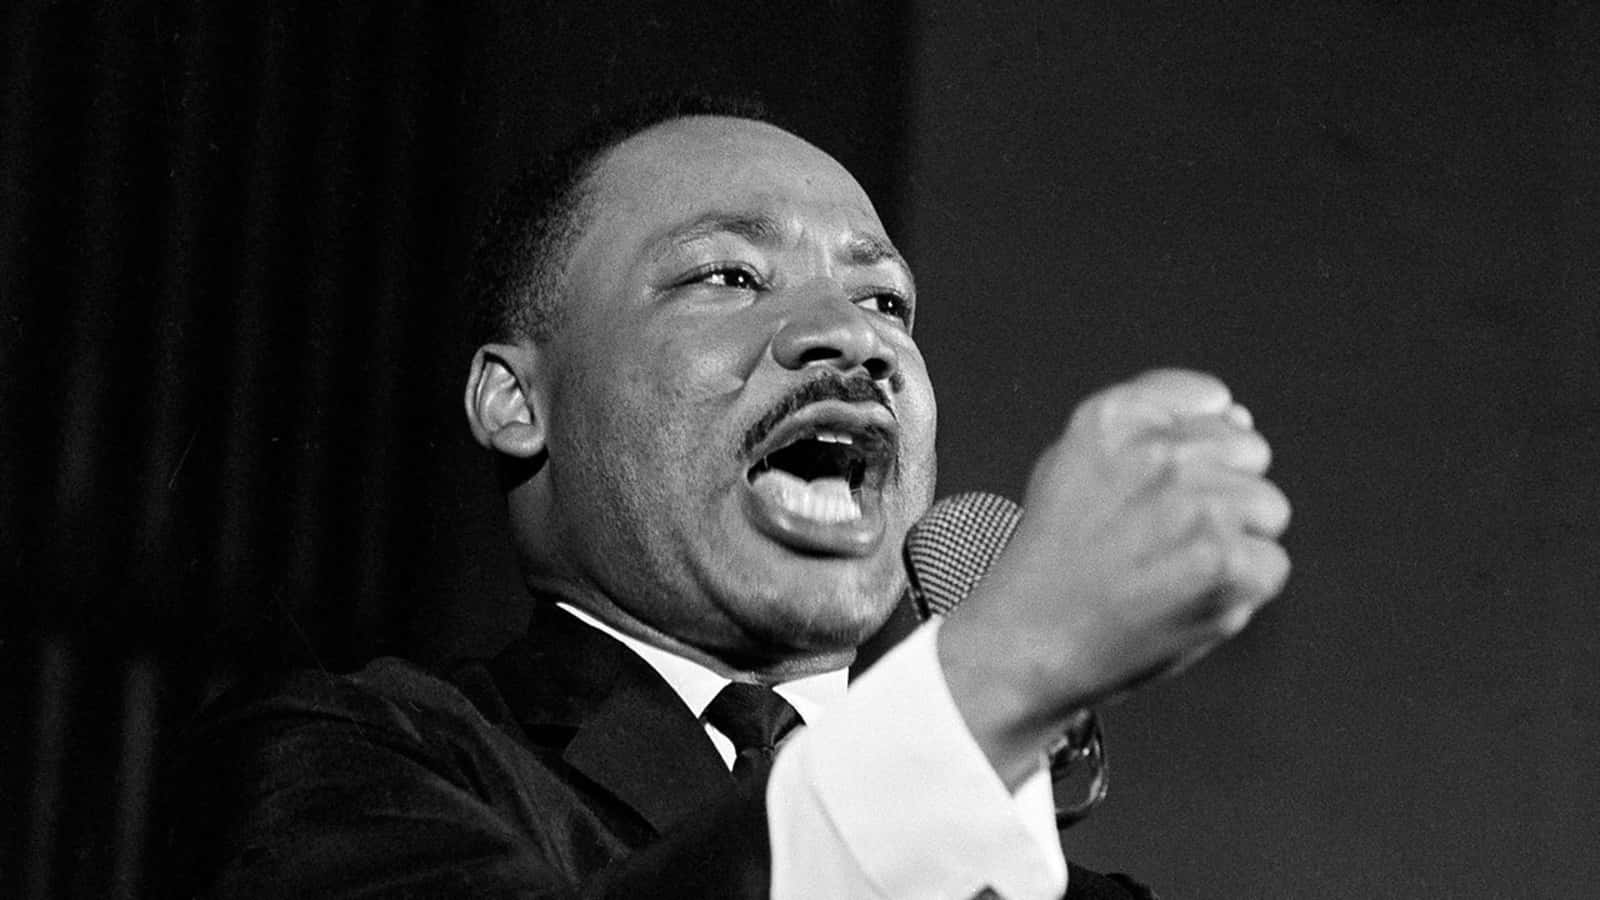 Martinluther King, Jr. - Martin Luther King, Jr.